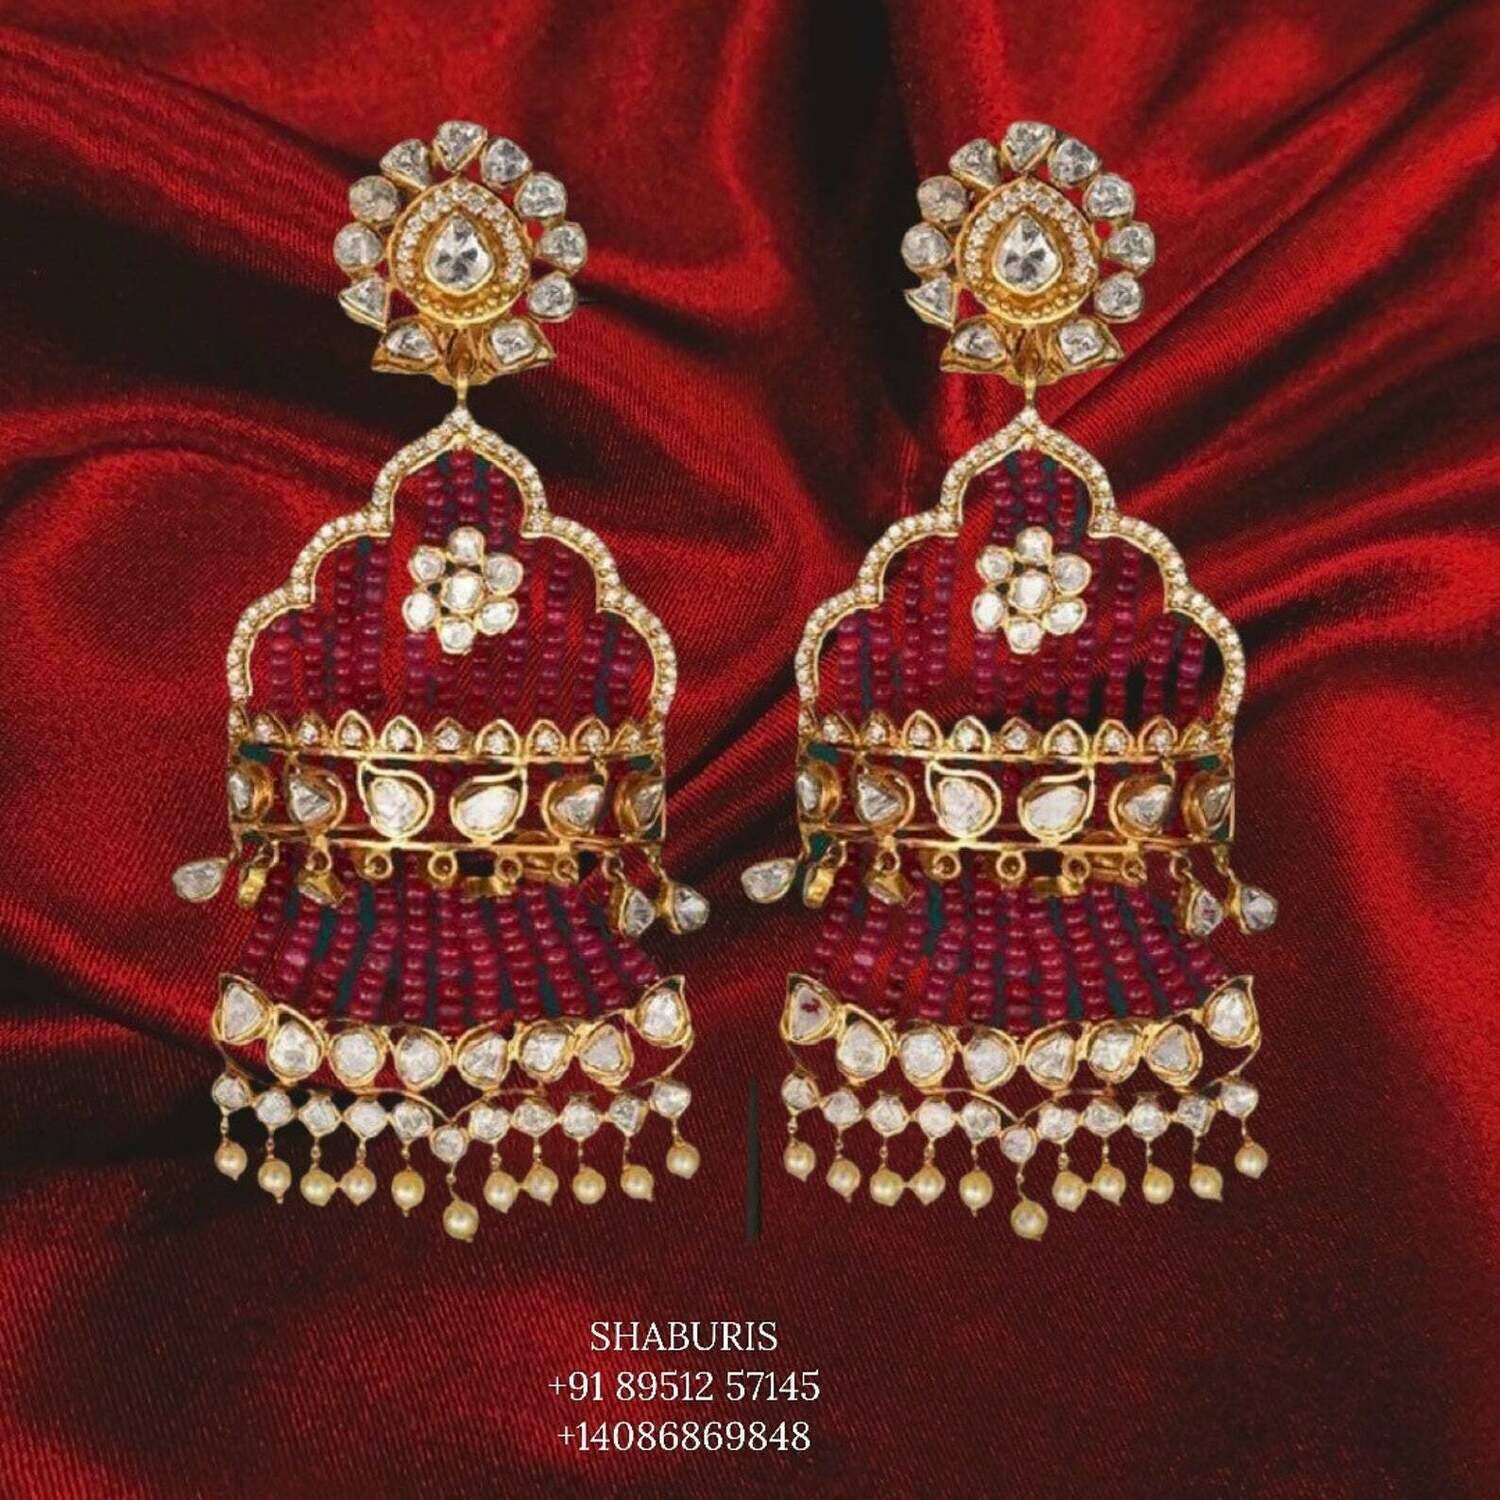 Latest Indian Jewelry,Pure Silver Jewellery Indian ,tassel earrings,polki jewelry,Indian Bridal,Indian Wedding Jewelry-NIHIRA-SHABURIS